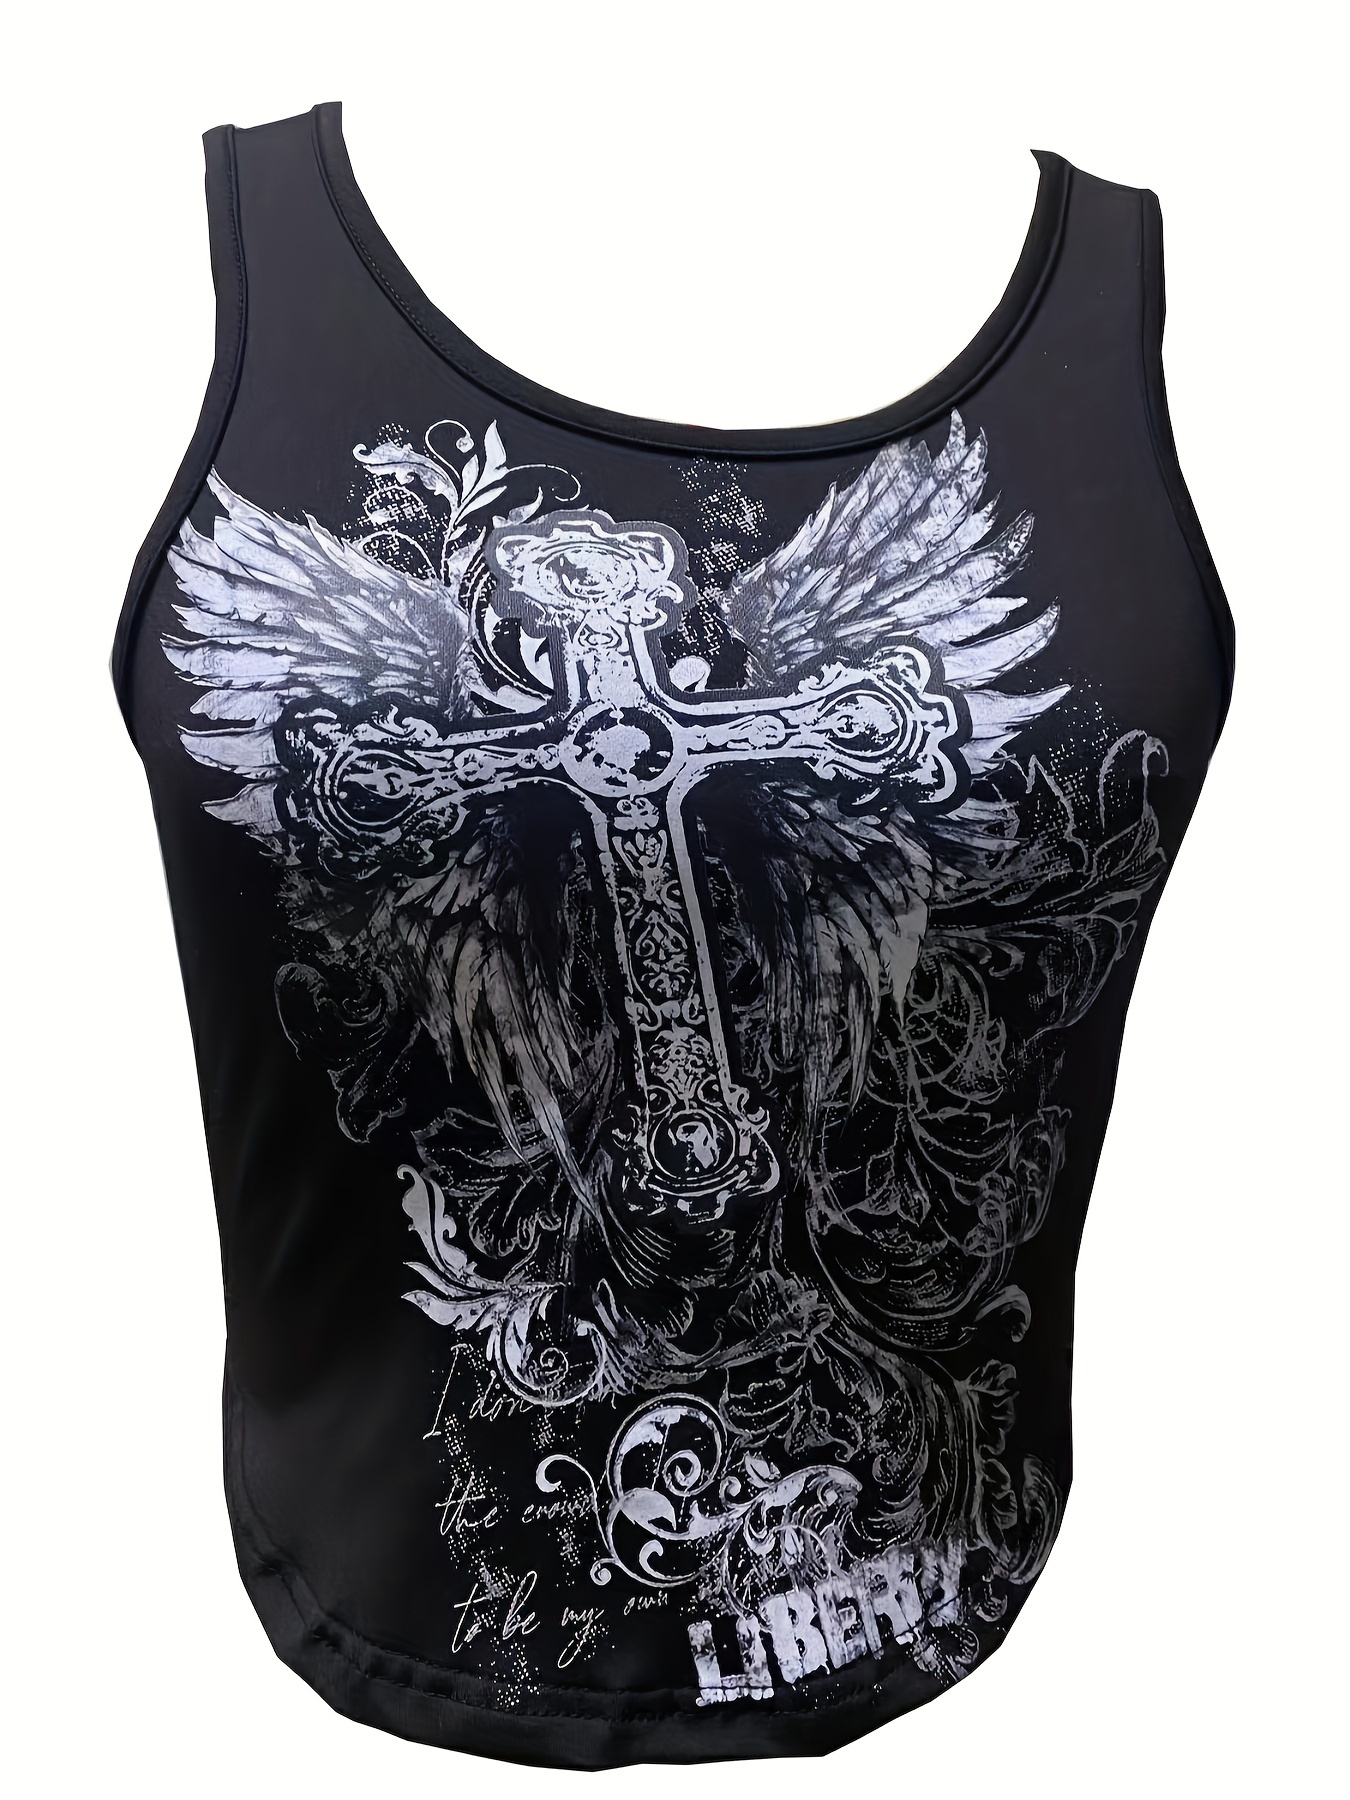 Damen Netz Shirt - Totenkopf - Goth Nights, Damen Shirts & Tops, Spiral  Gothic, Kleidung, Gothic-Shop